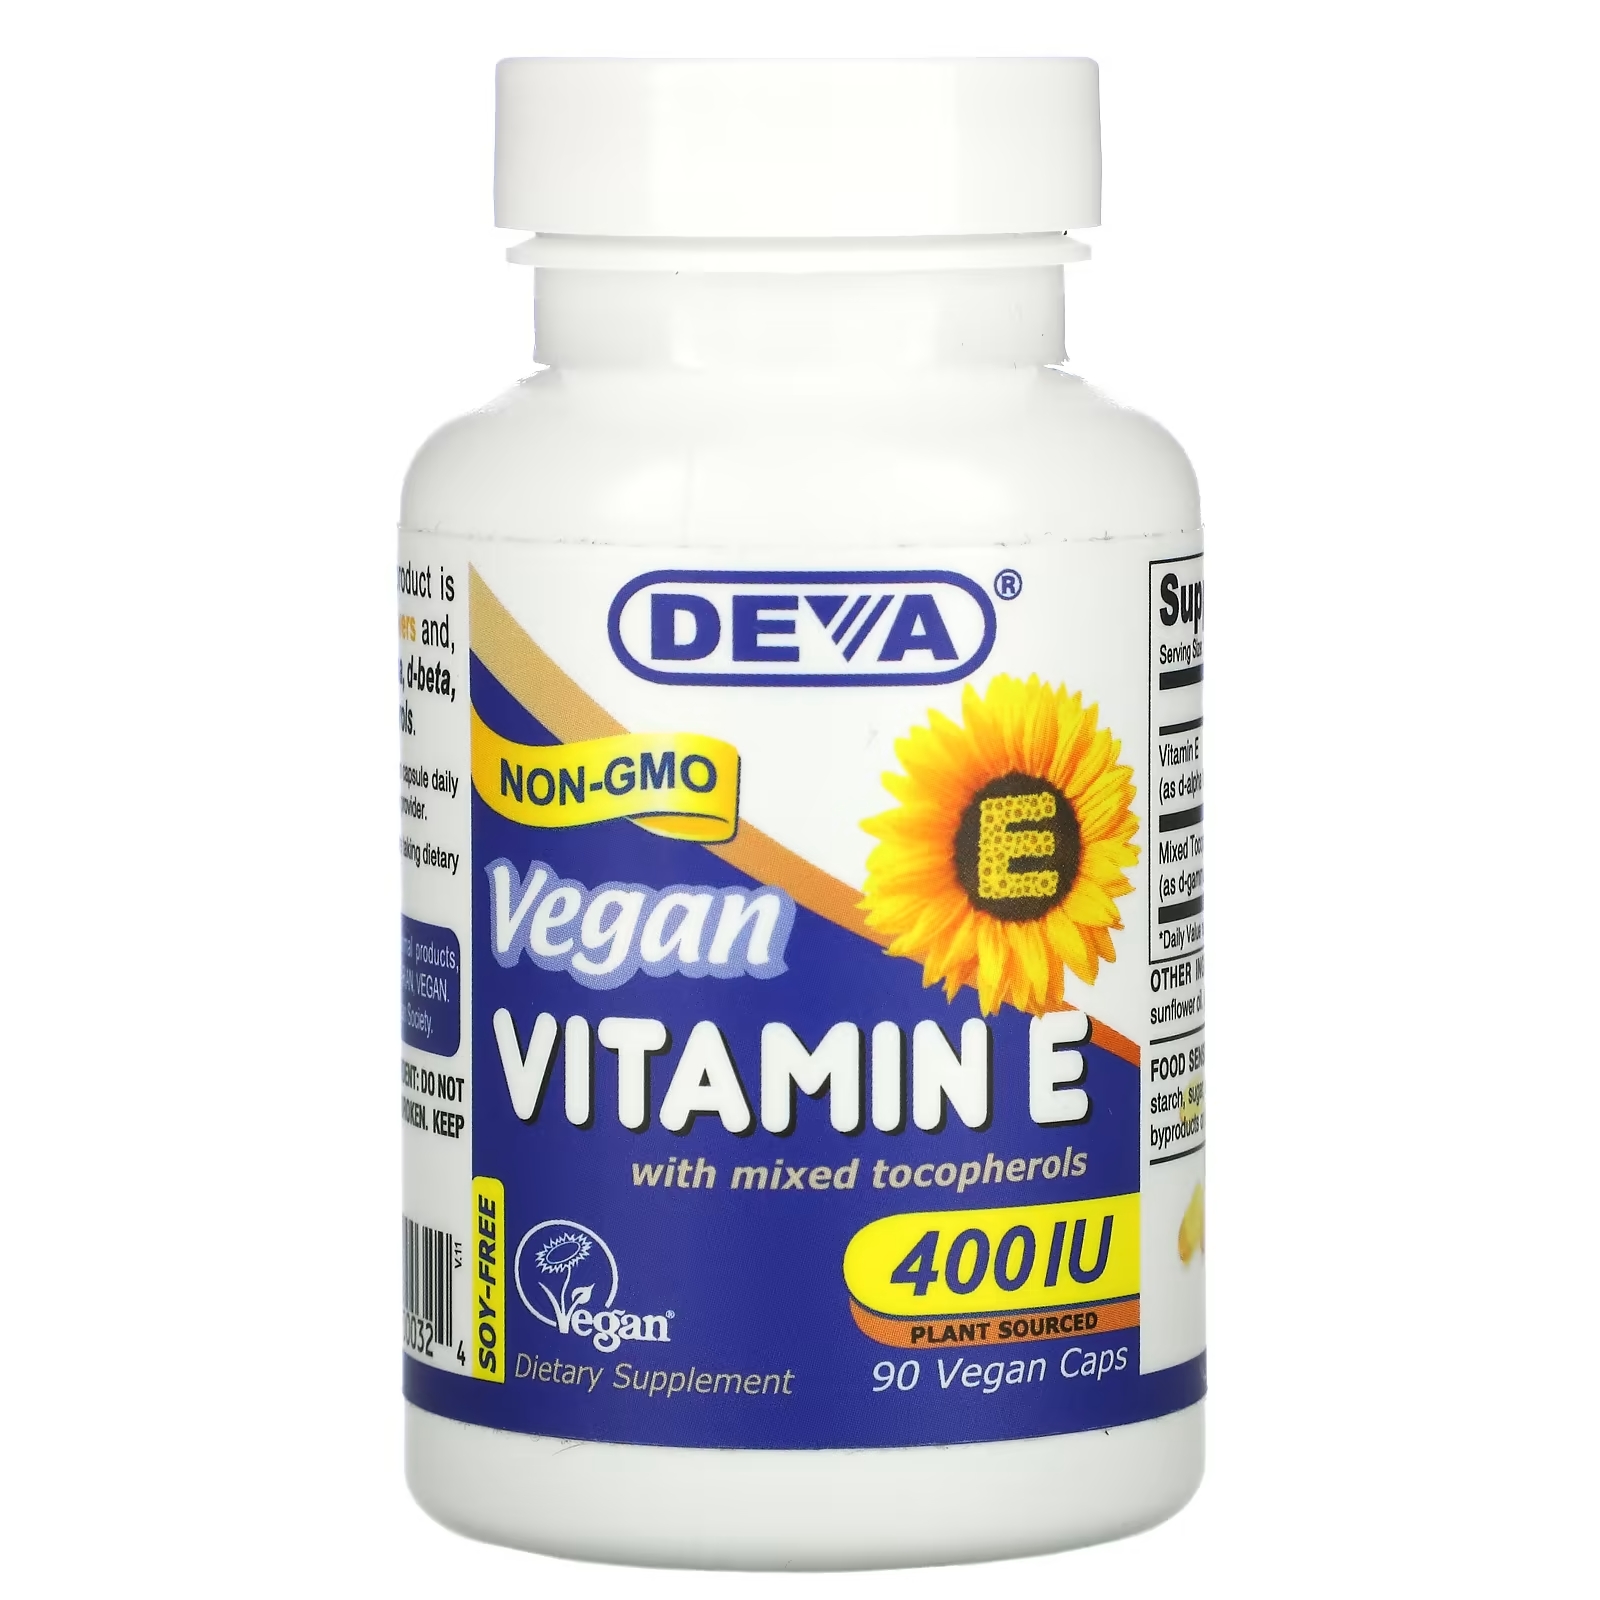 Deva Веганский витамин E со смешанными токоферолами без сои 400 МЕ, 90 веганских капсул now foods витамин e 400 со смешанными токоферолами 268 мг 400 ме 250 капсул